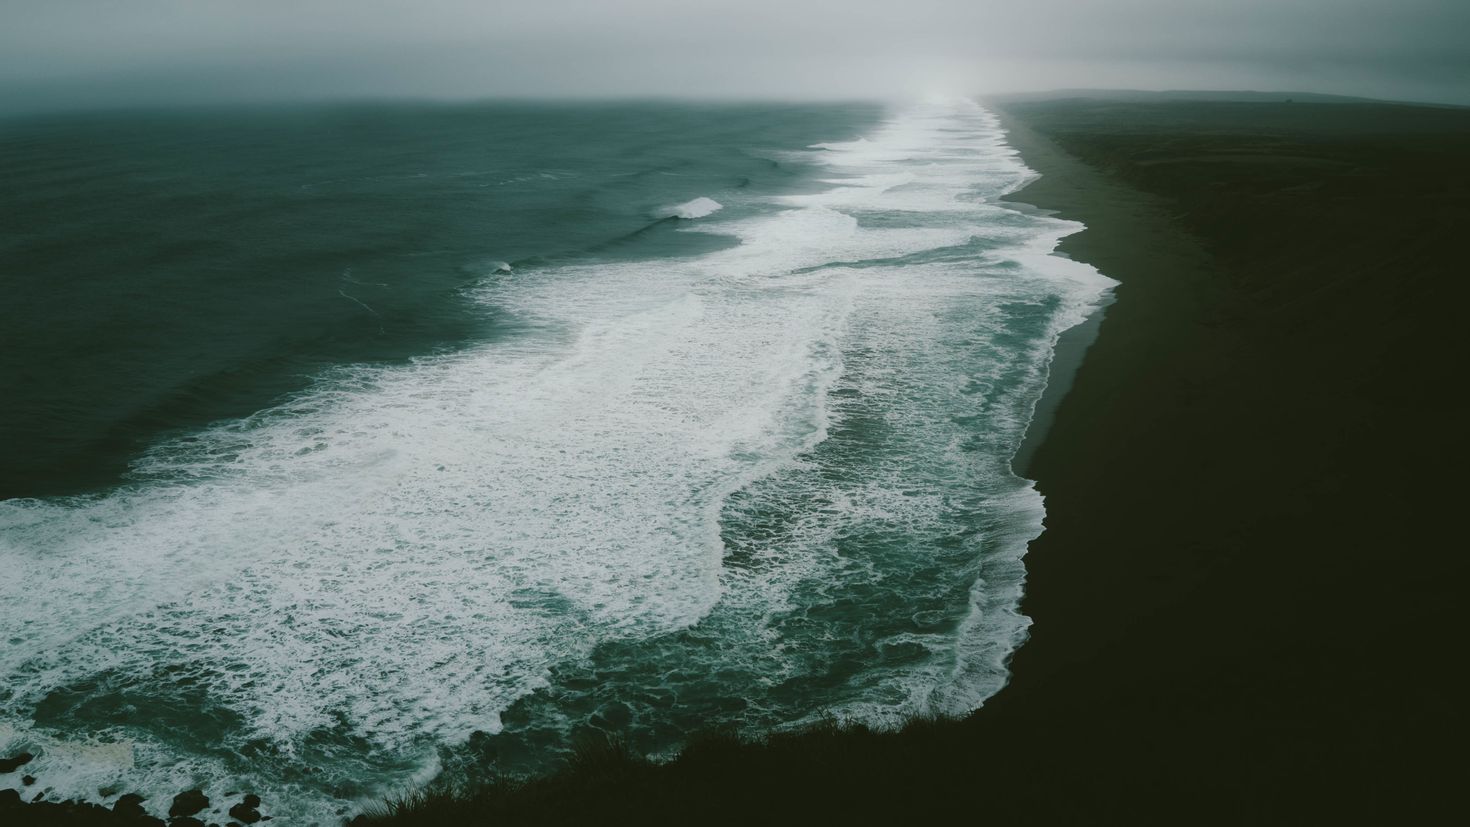 Слушать 2 океана. Под водой. Севастополь море. Пляж в тумане. Обои на рабочий стол 3440 x 1440 волны море.